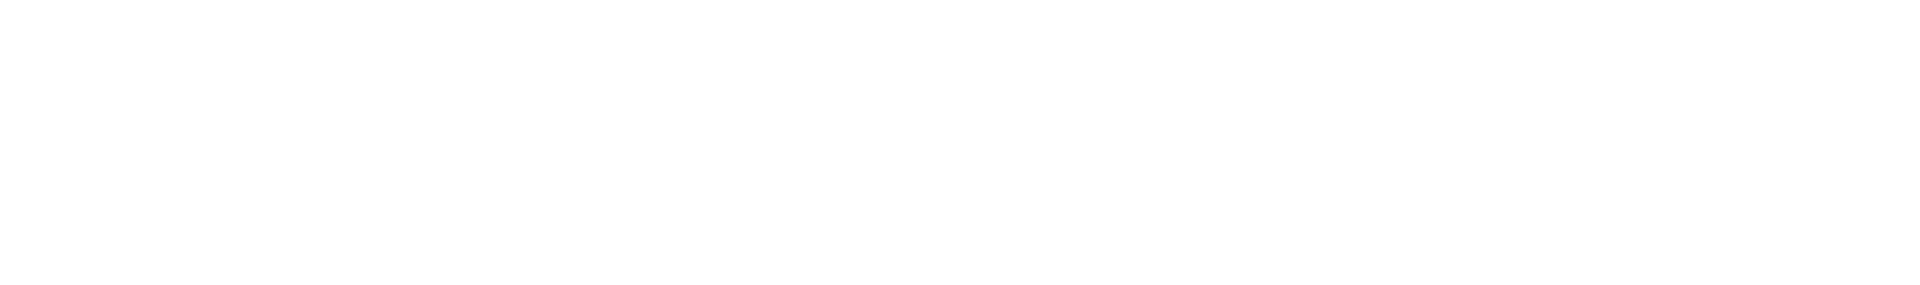 Insurance Center of Kansas LLC